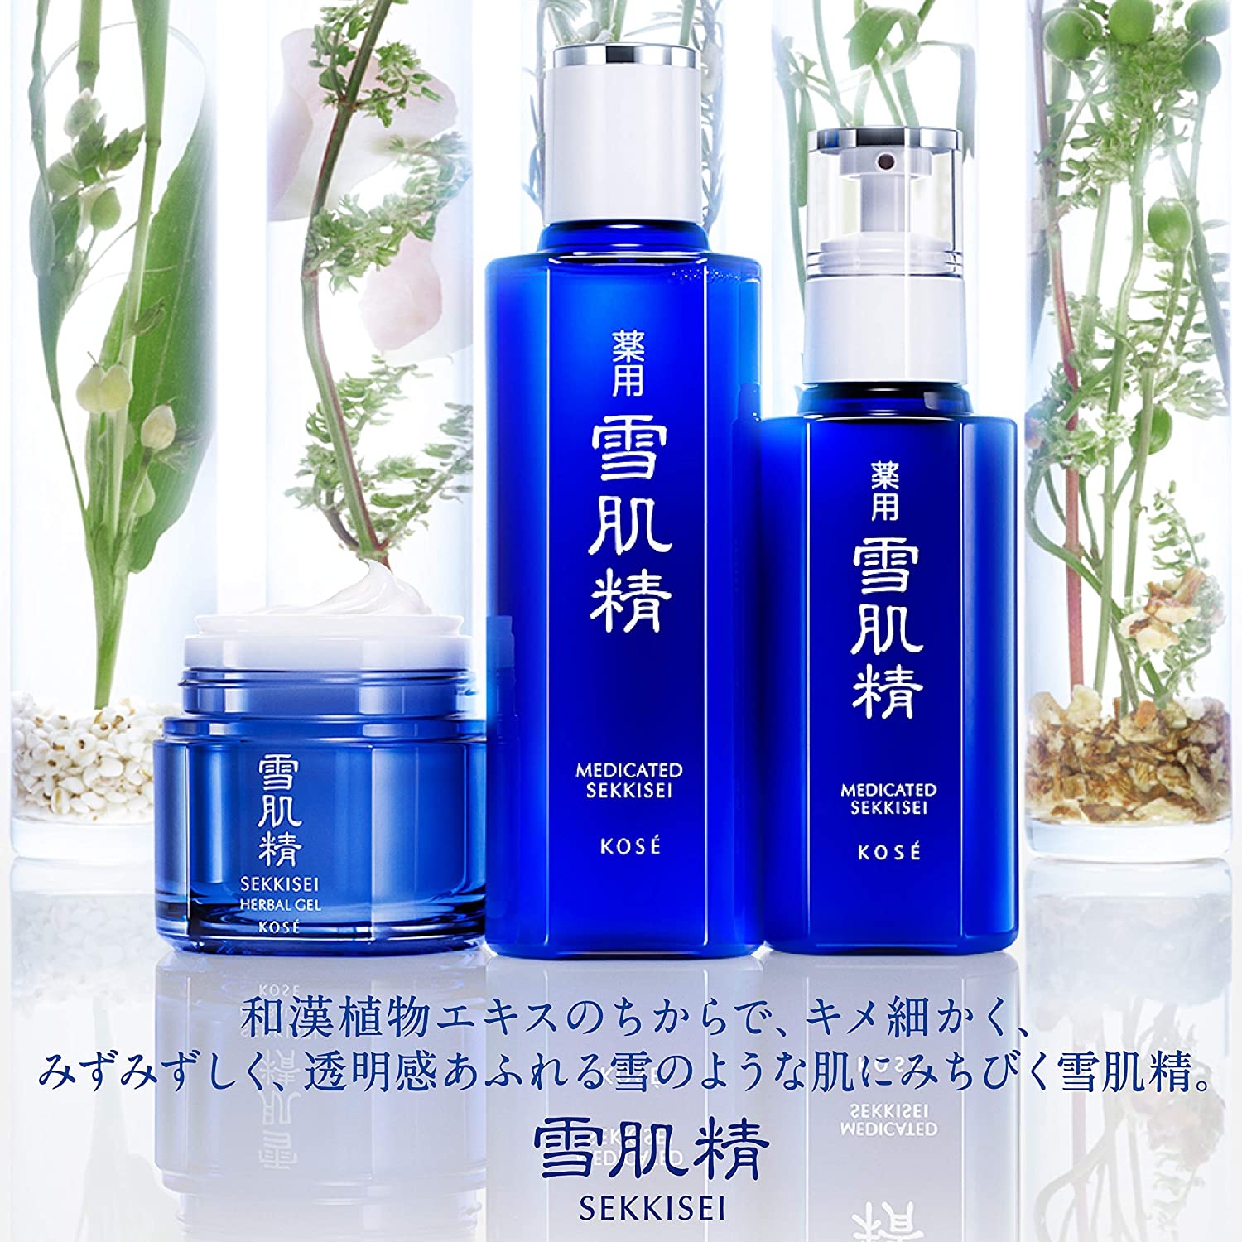 雪肌精(SEKKISEI) 化粧水仕立て 石けんの商品画像サムネ4 